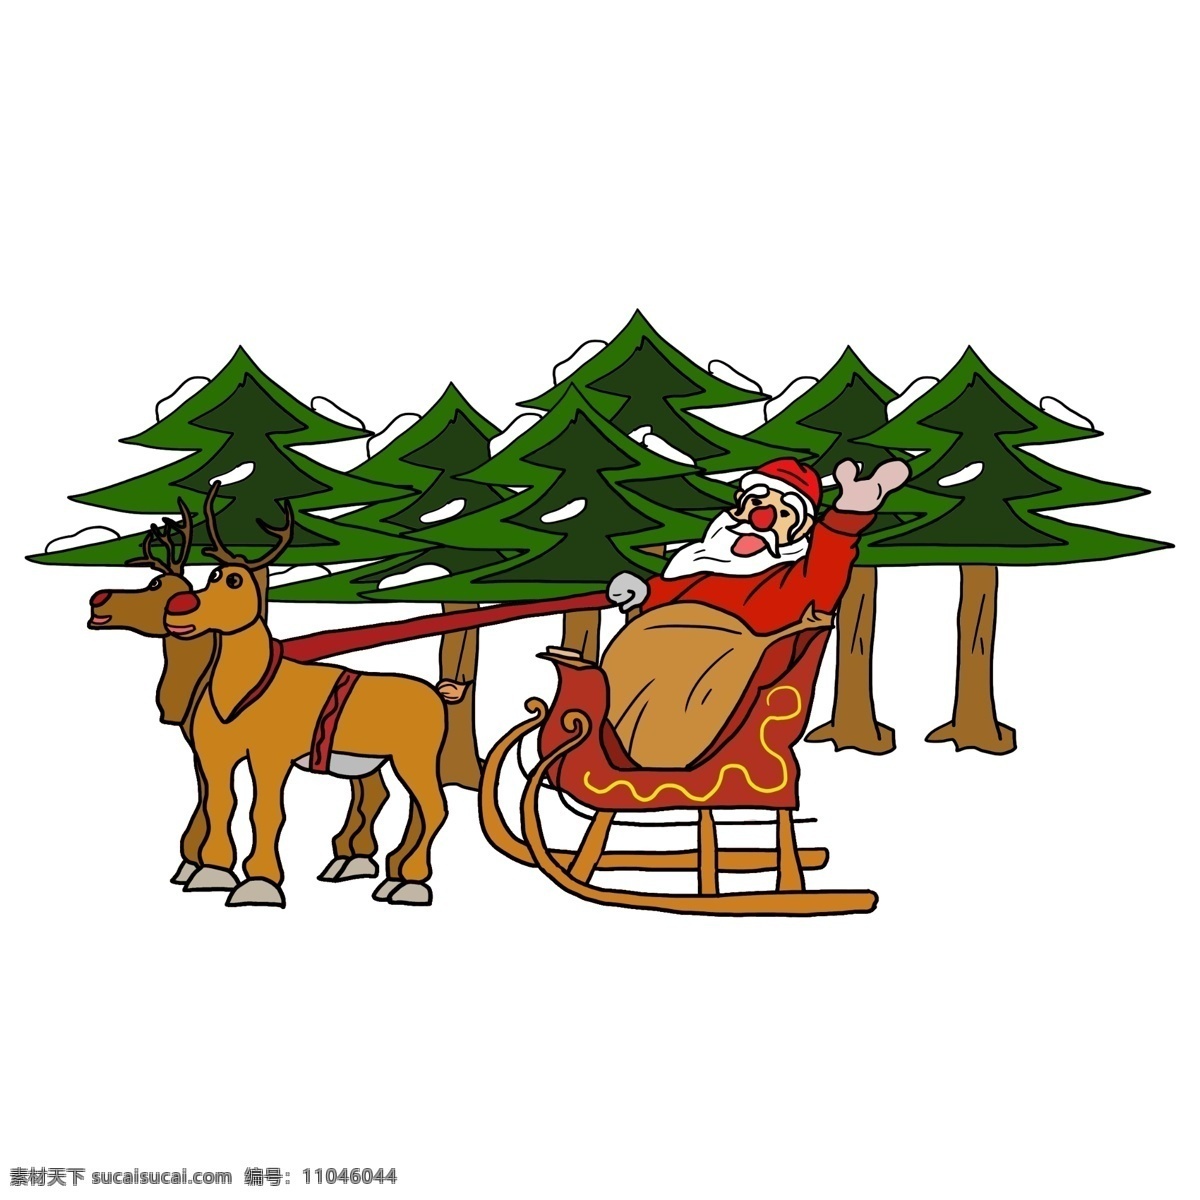 圣诞节 平安夜 圣诞老人 大家 挥手 准备 送礼 物 驯鹿 树林 圣诞帽 雪橇匆忙 挥手示意